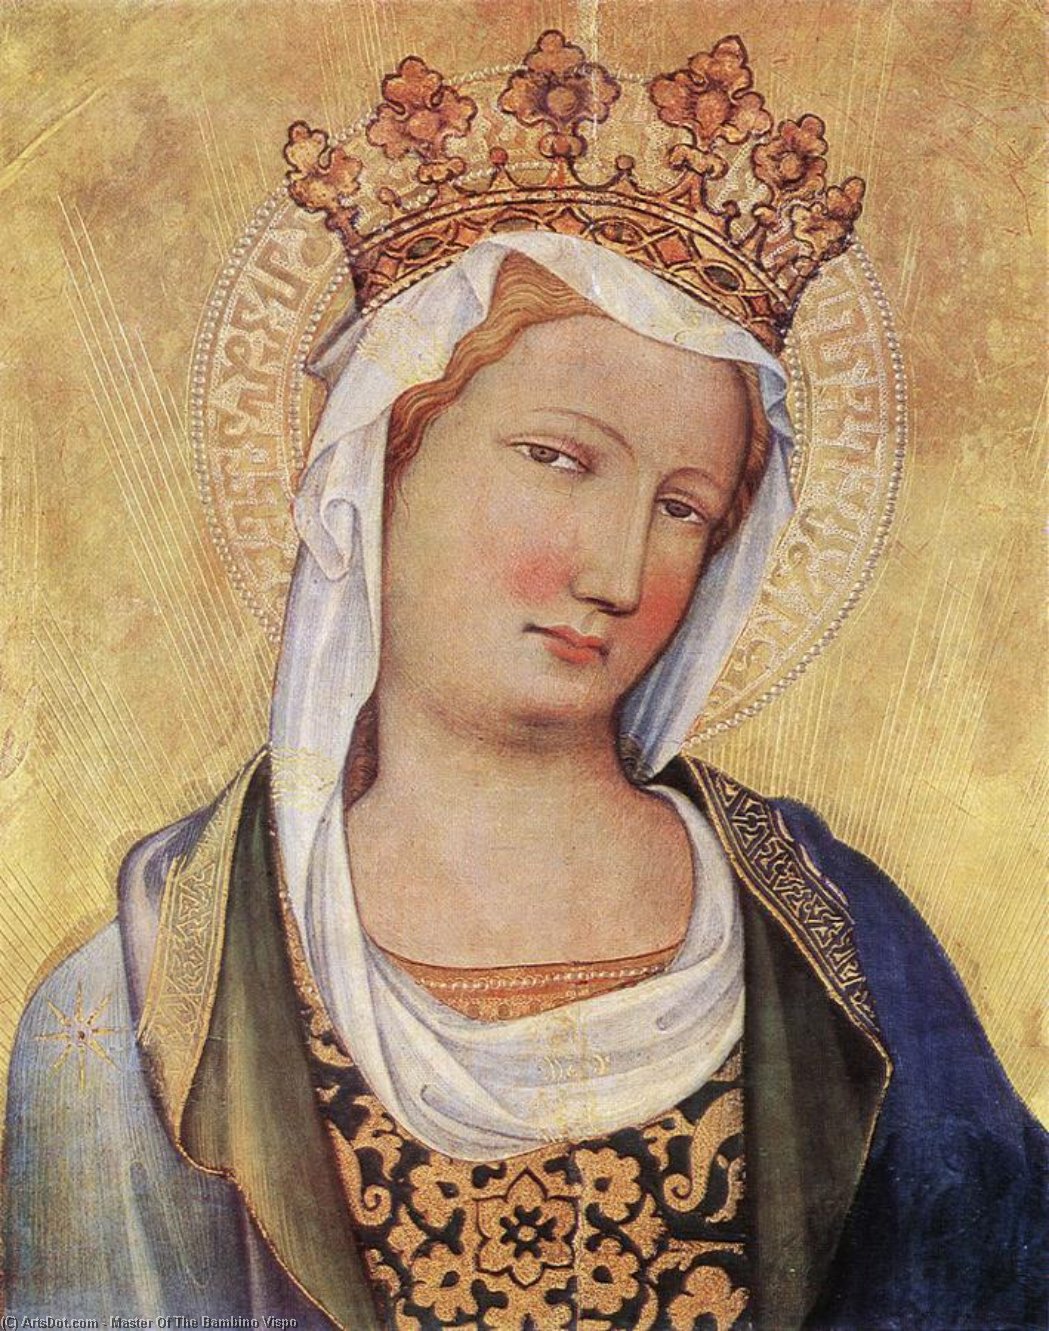 WikiOO.org - Encyclopedia of Fine Arts - Maľba, Artwork Master Of The Bambino Vispo - Virgin Mary